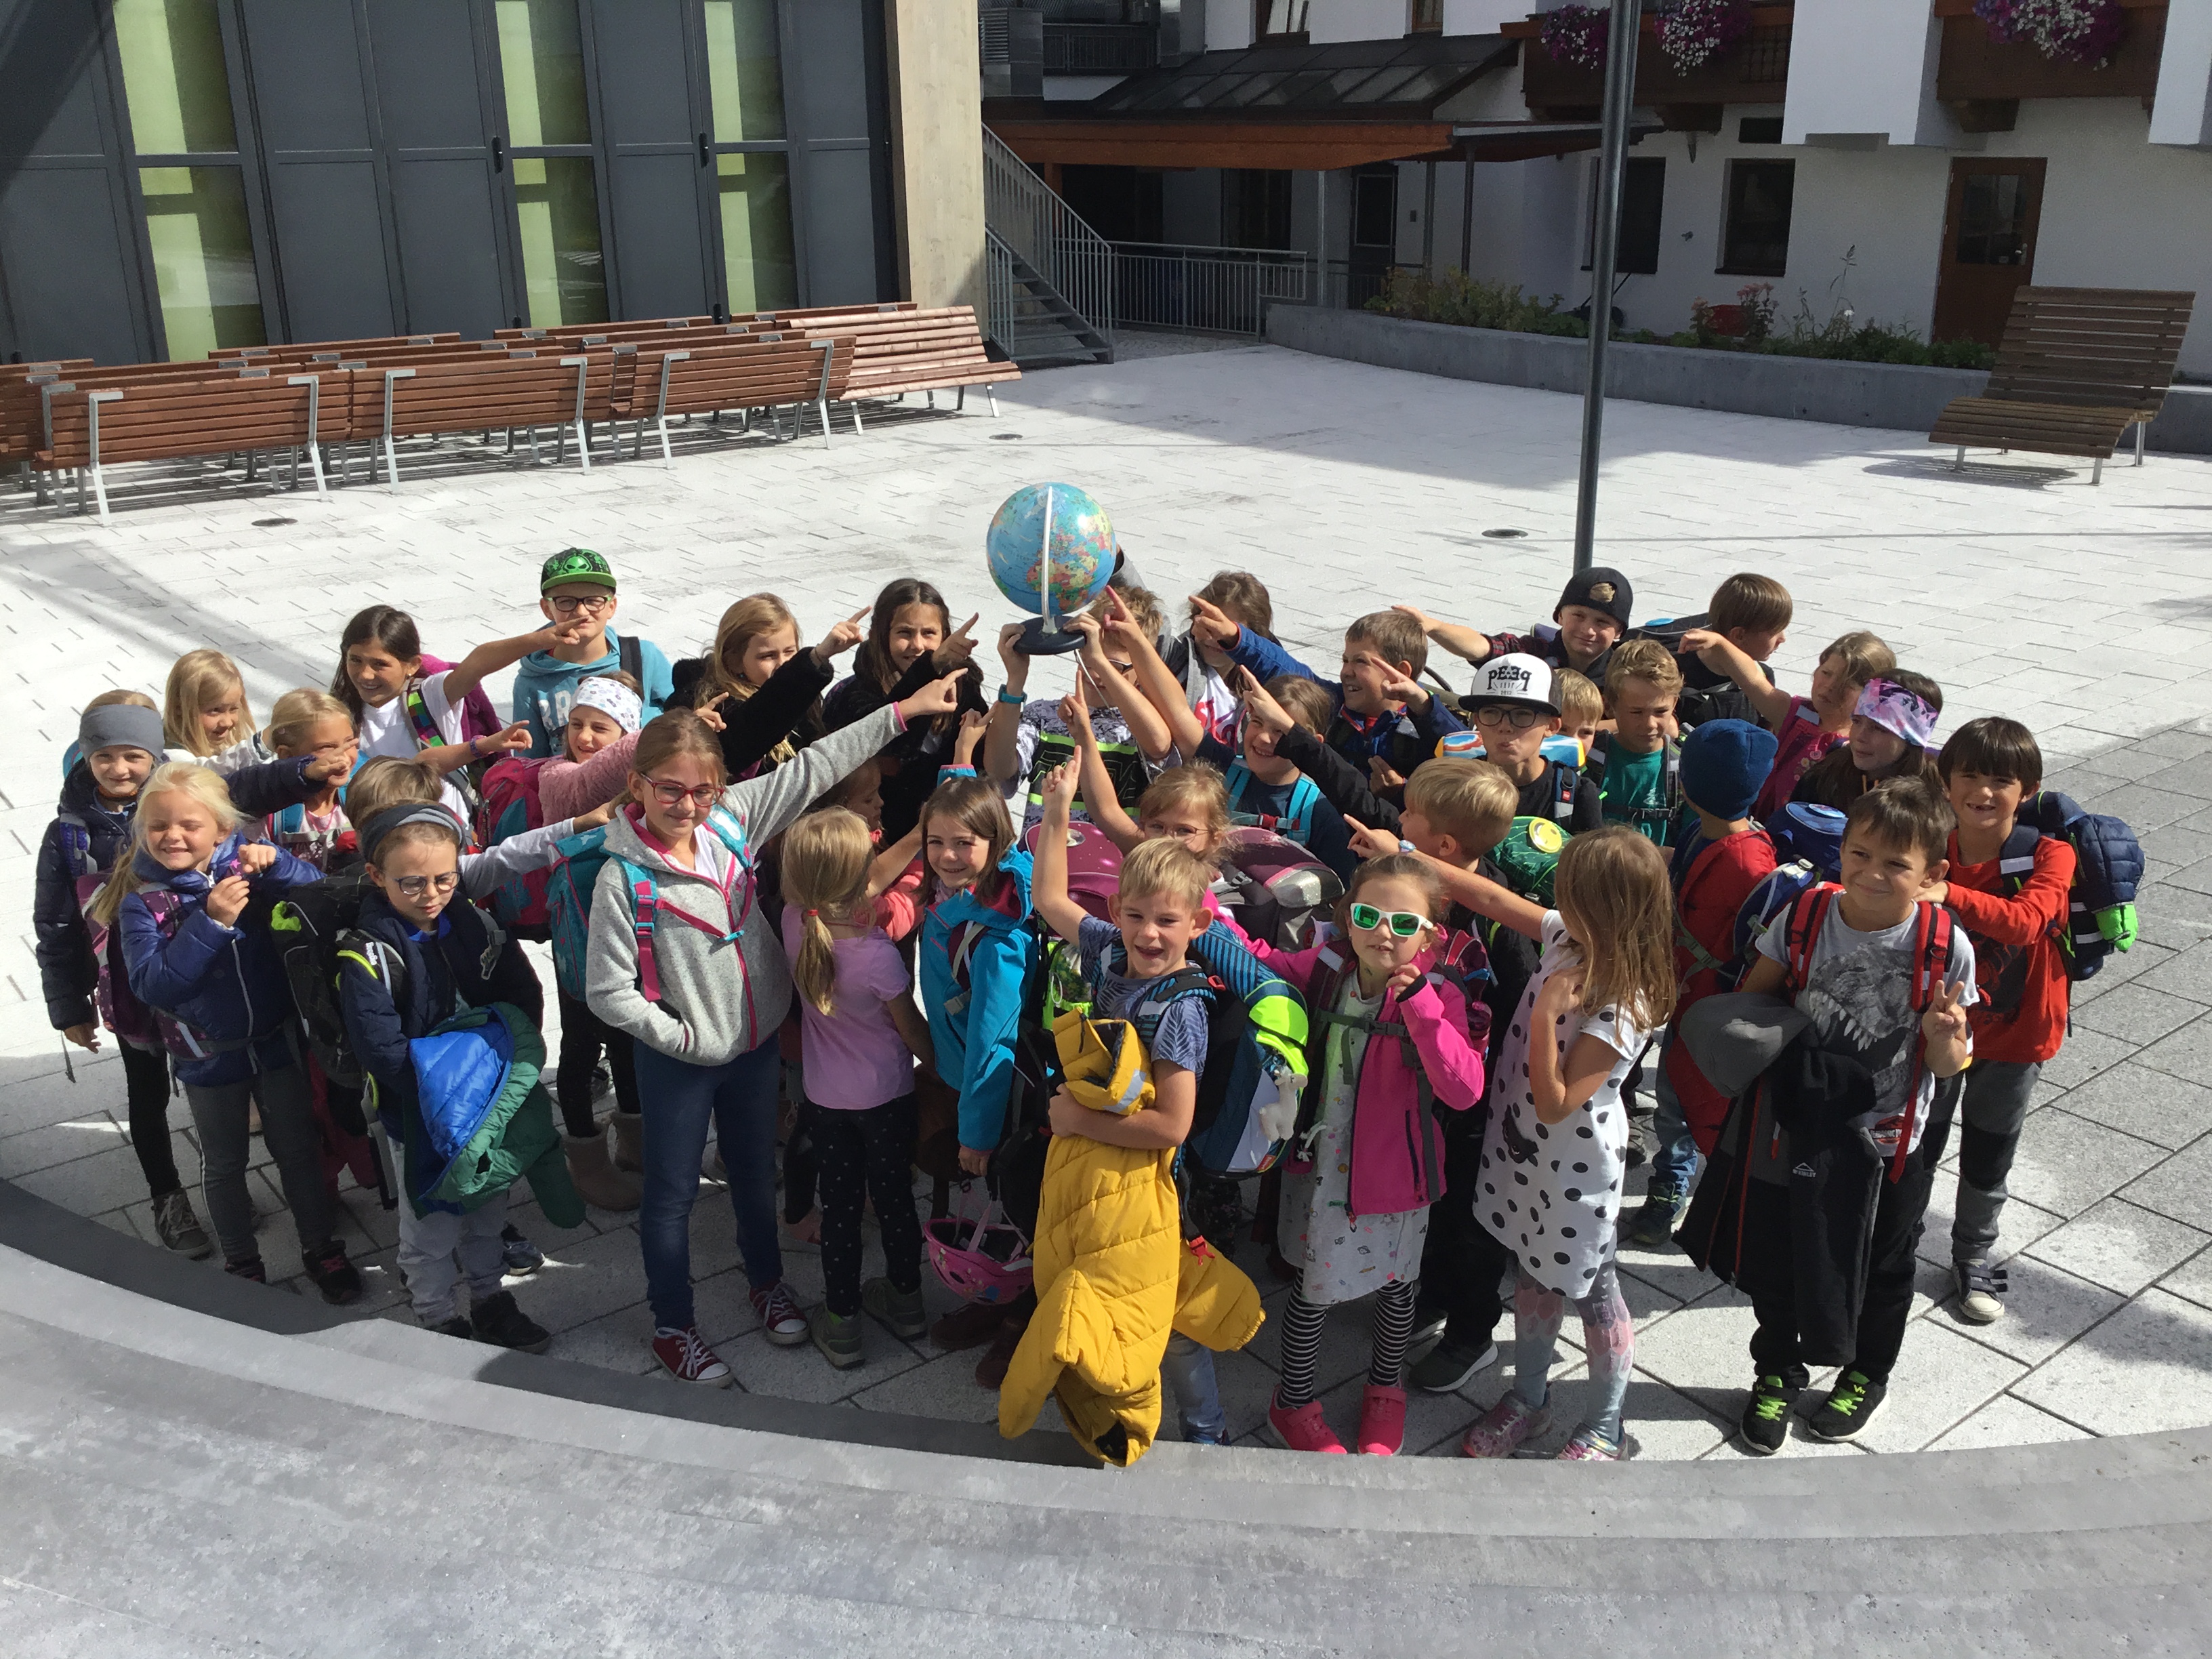 Kinder einer Volkschule stehen in der Gruppe zusammen und halten einen Globus gemeinsam in die Luft